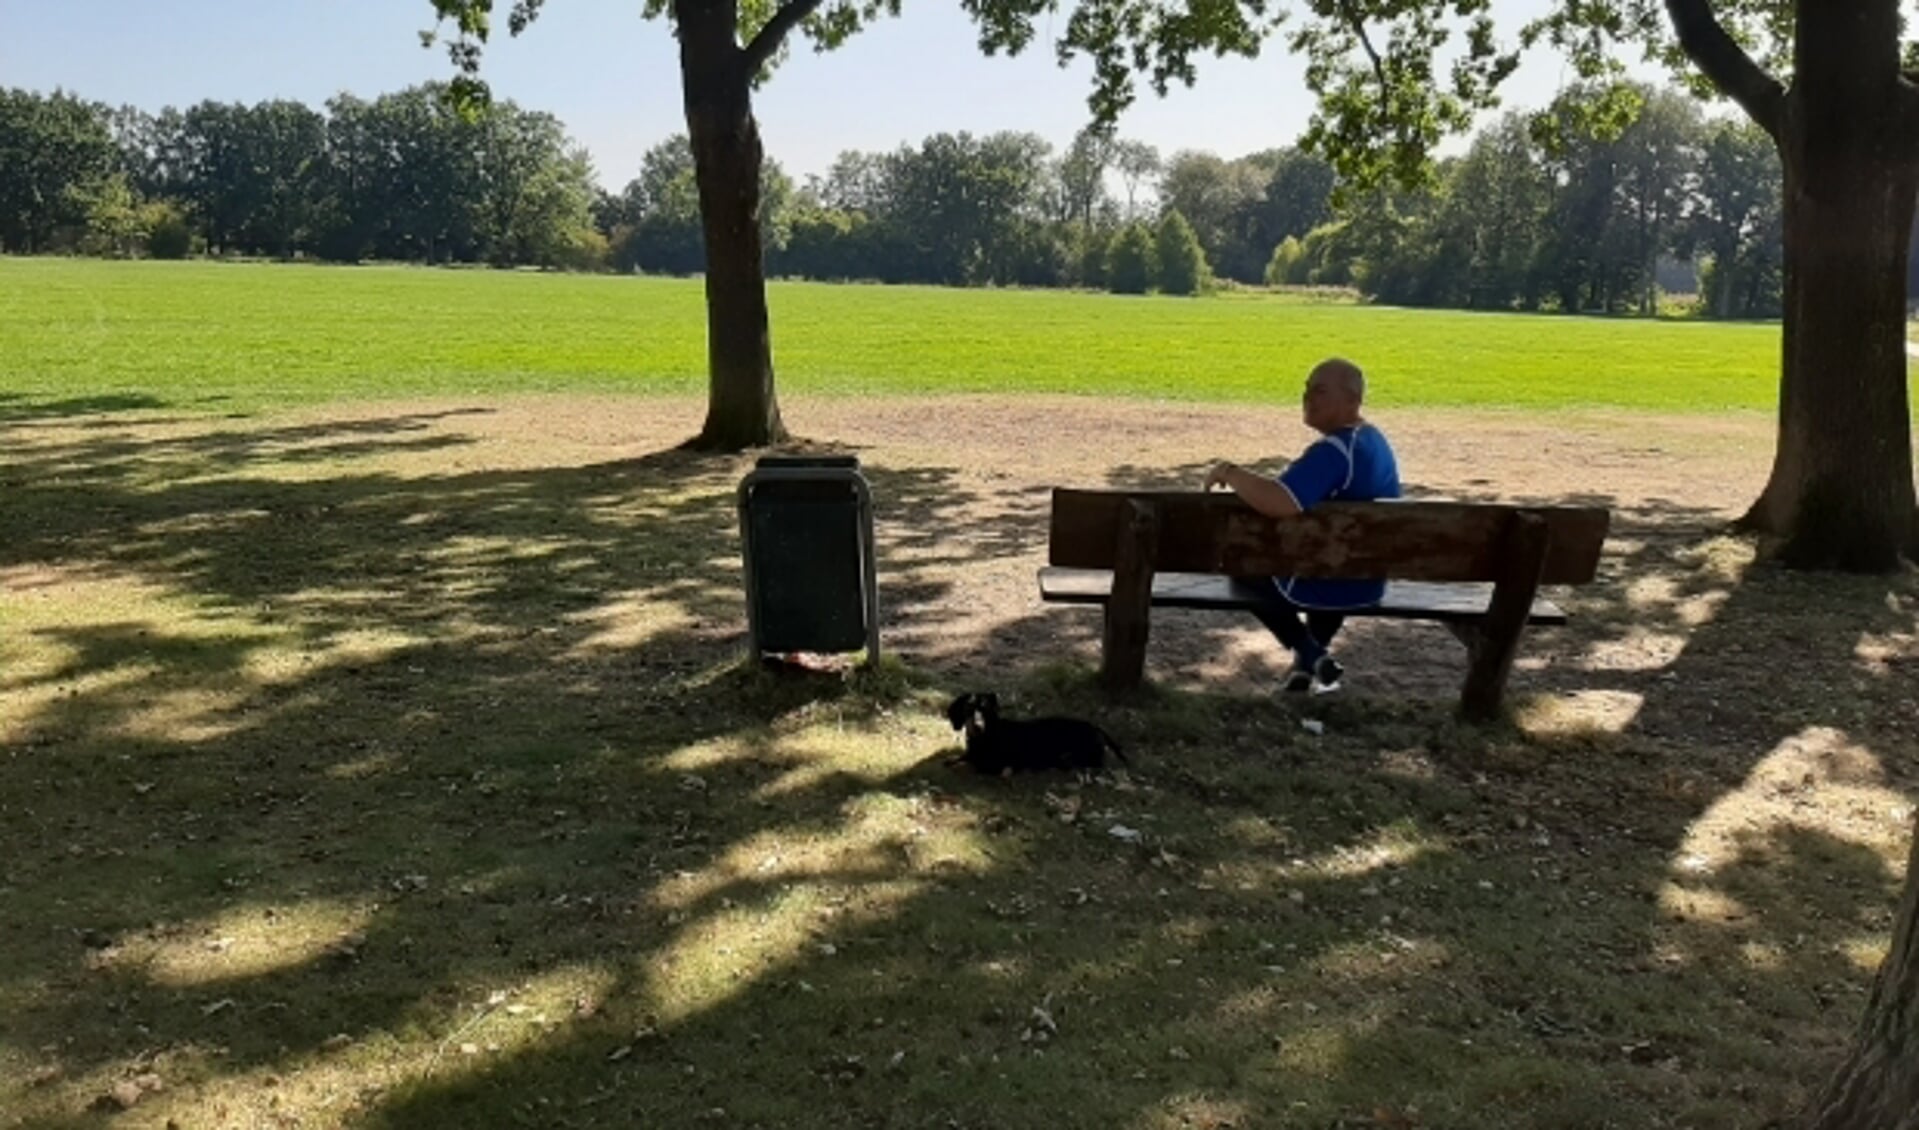 Het Stadspark aan de rand van Veenendaal is een oase van rust waar men graagt wandelt, jogt, de hond uitlaat of gewoon gaat zitten, op een bankje of langs de waterkant. (Foto: Martin Brinkl/DPGMedia) 